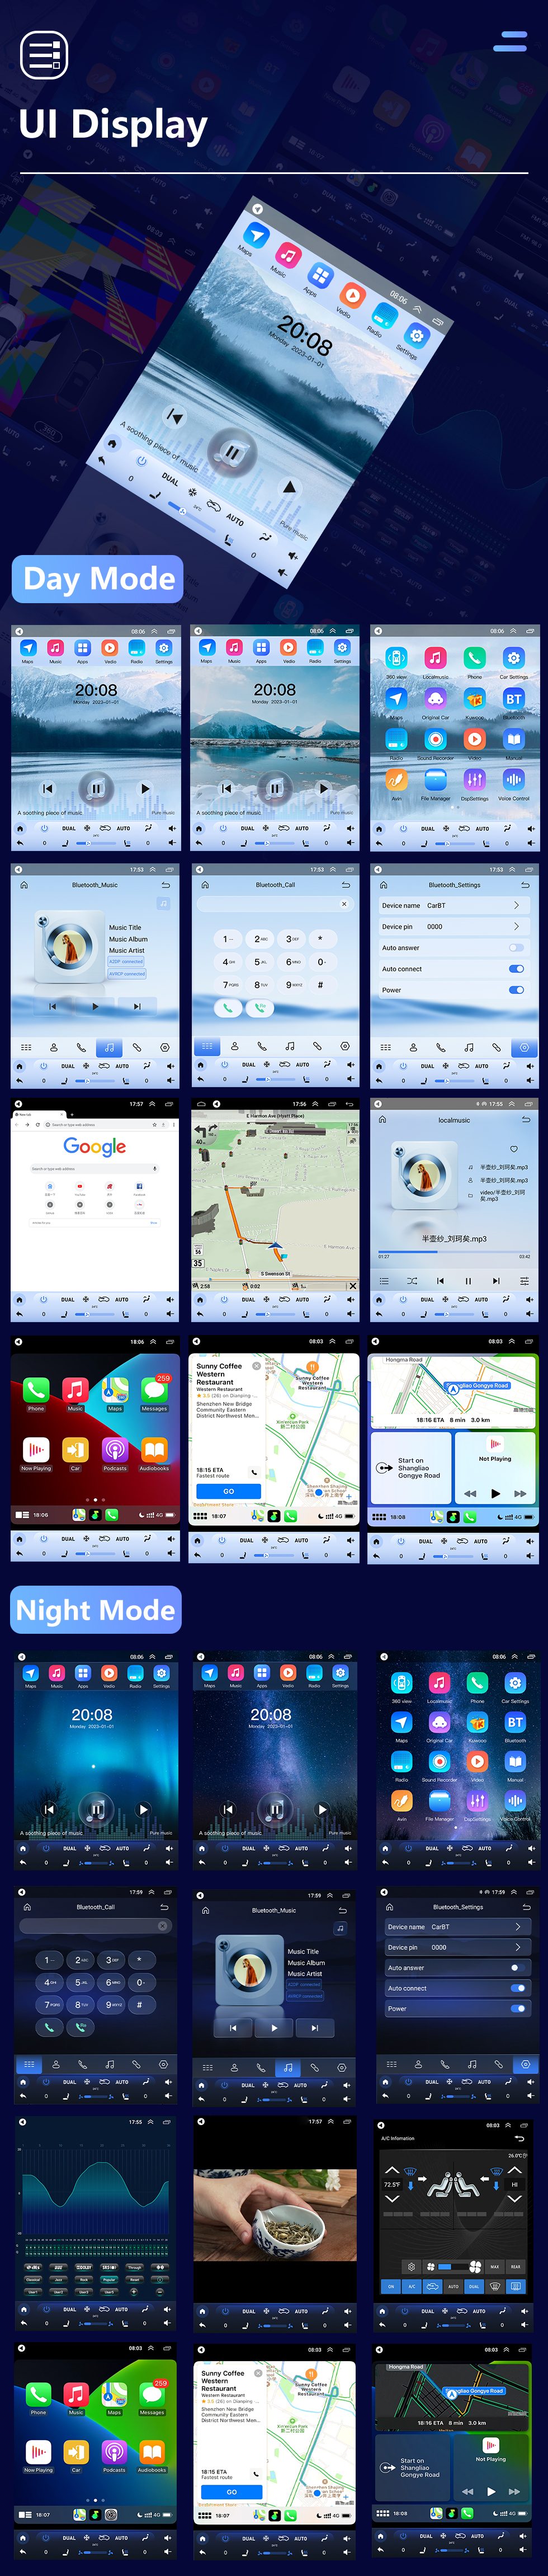 Seicane Radio de navegación GPS con pantalla táctil Android 10.0 HD de 12,1 pulgadas para TOYOTA PRADO 2010-2013 con Bluetooth Carplay